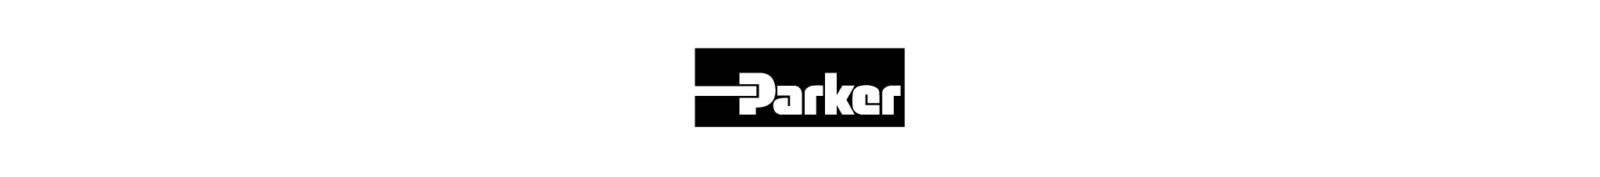 Parker Catalogue Portfolio 5